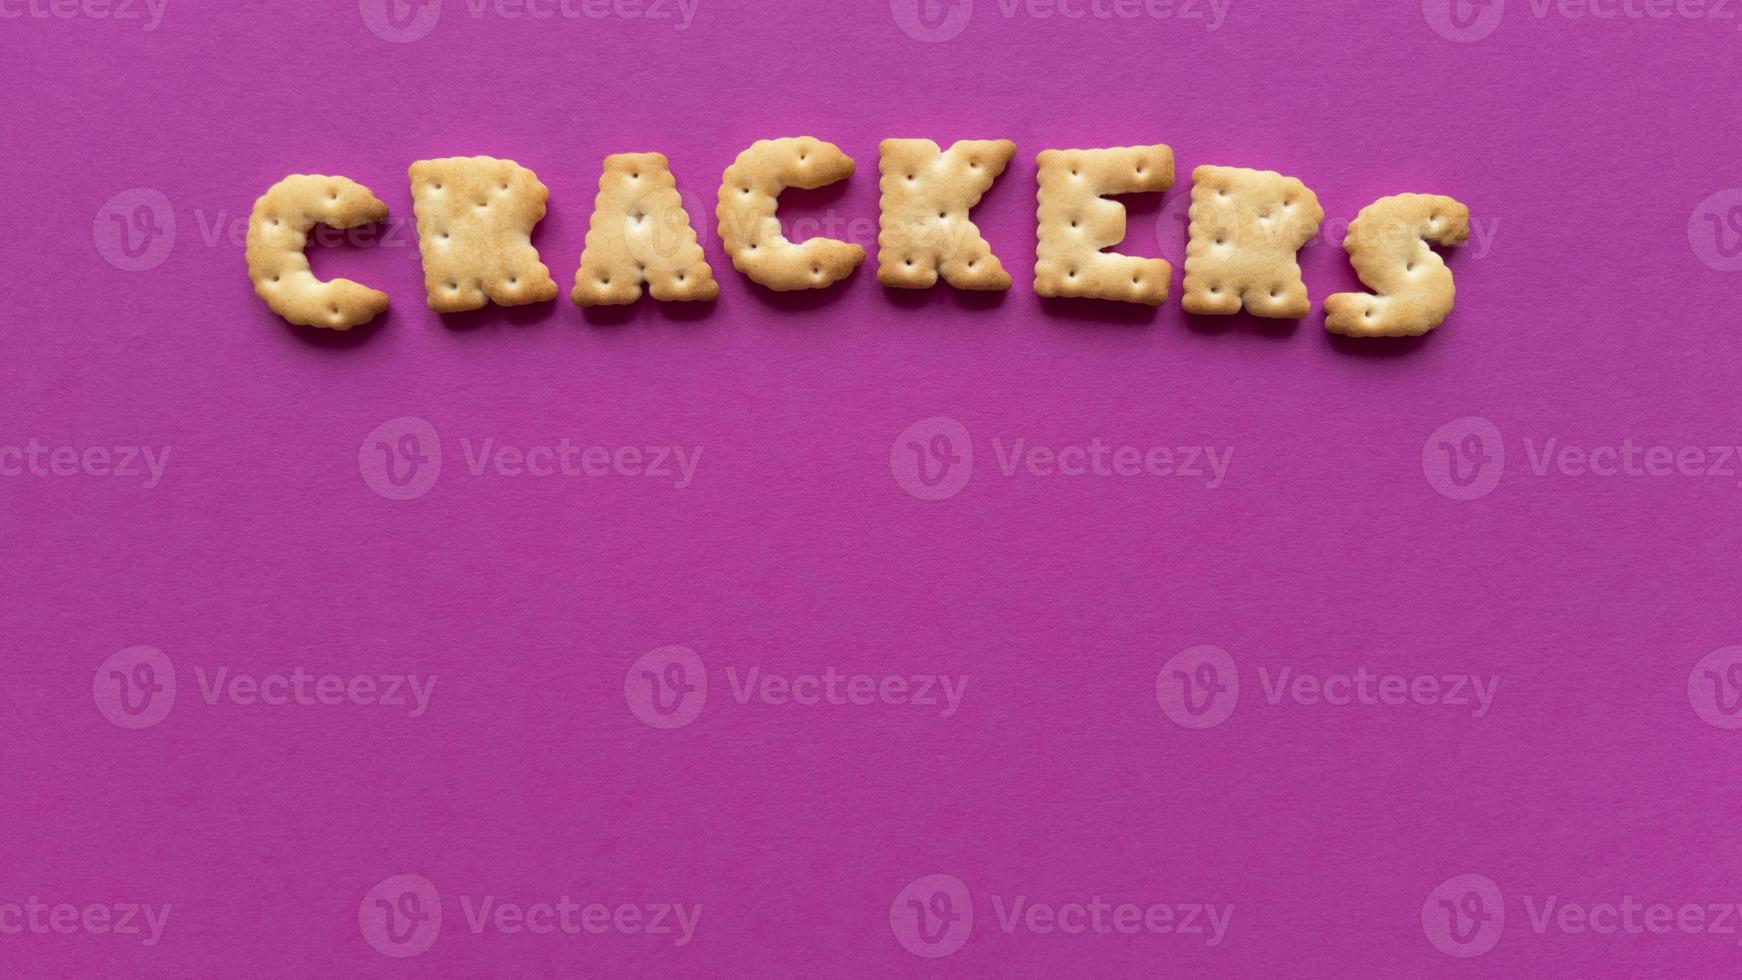 Cracker Wort auf rosa Hintergrund einfache flache lag mit Pastell Textur und Kopie Raum stock photo foto